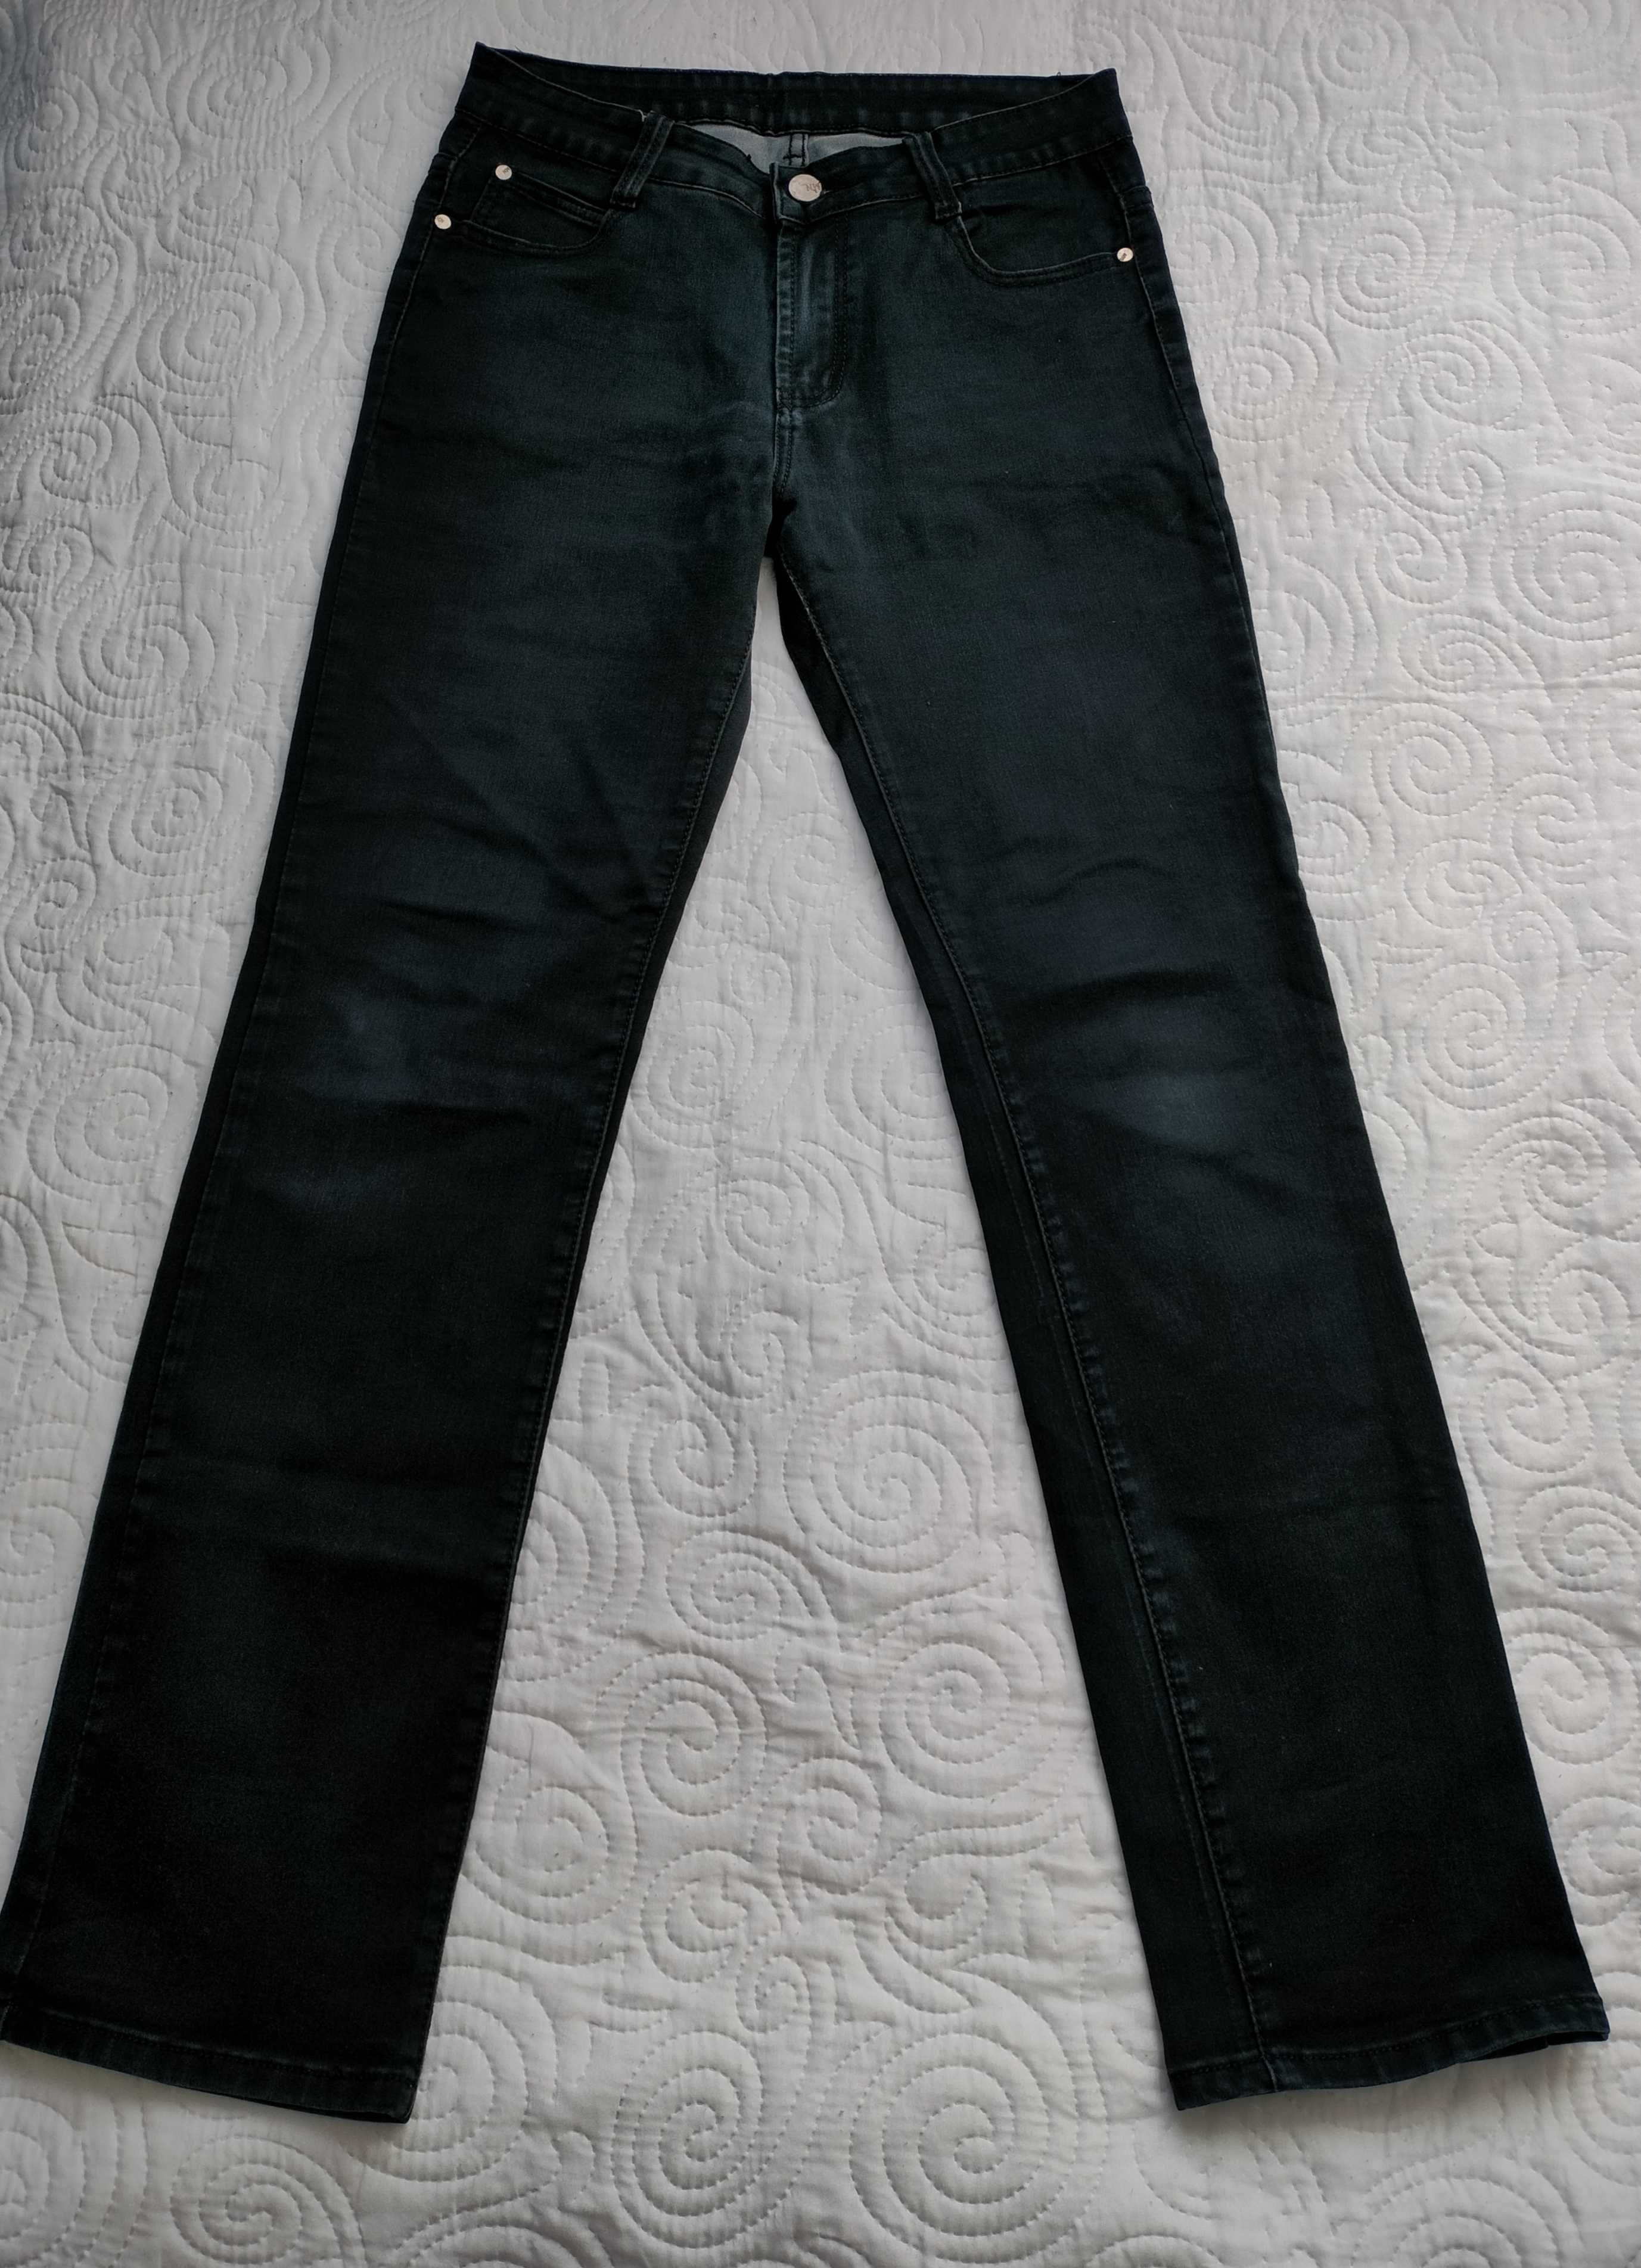 Spodnie dżinsowe, czarne, rozmiar 40/42